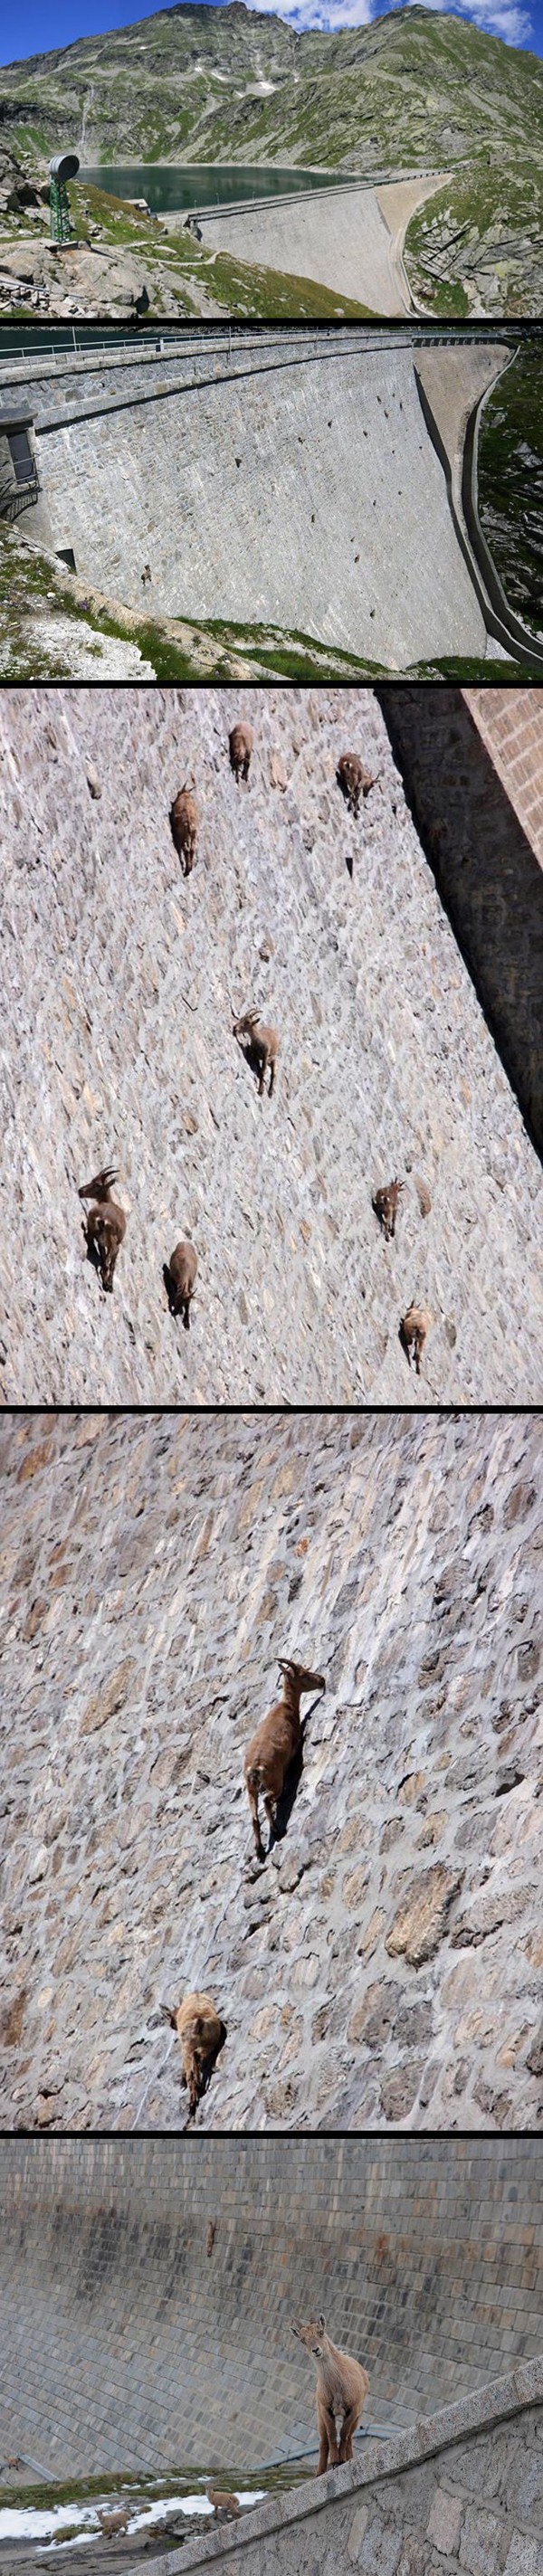 Dam goats